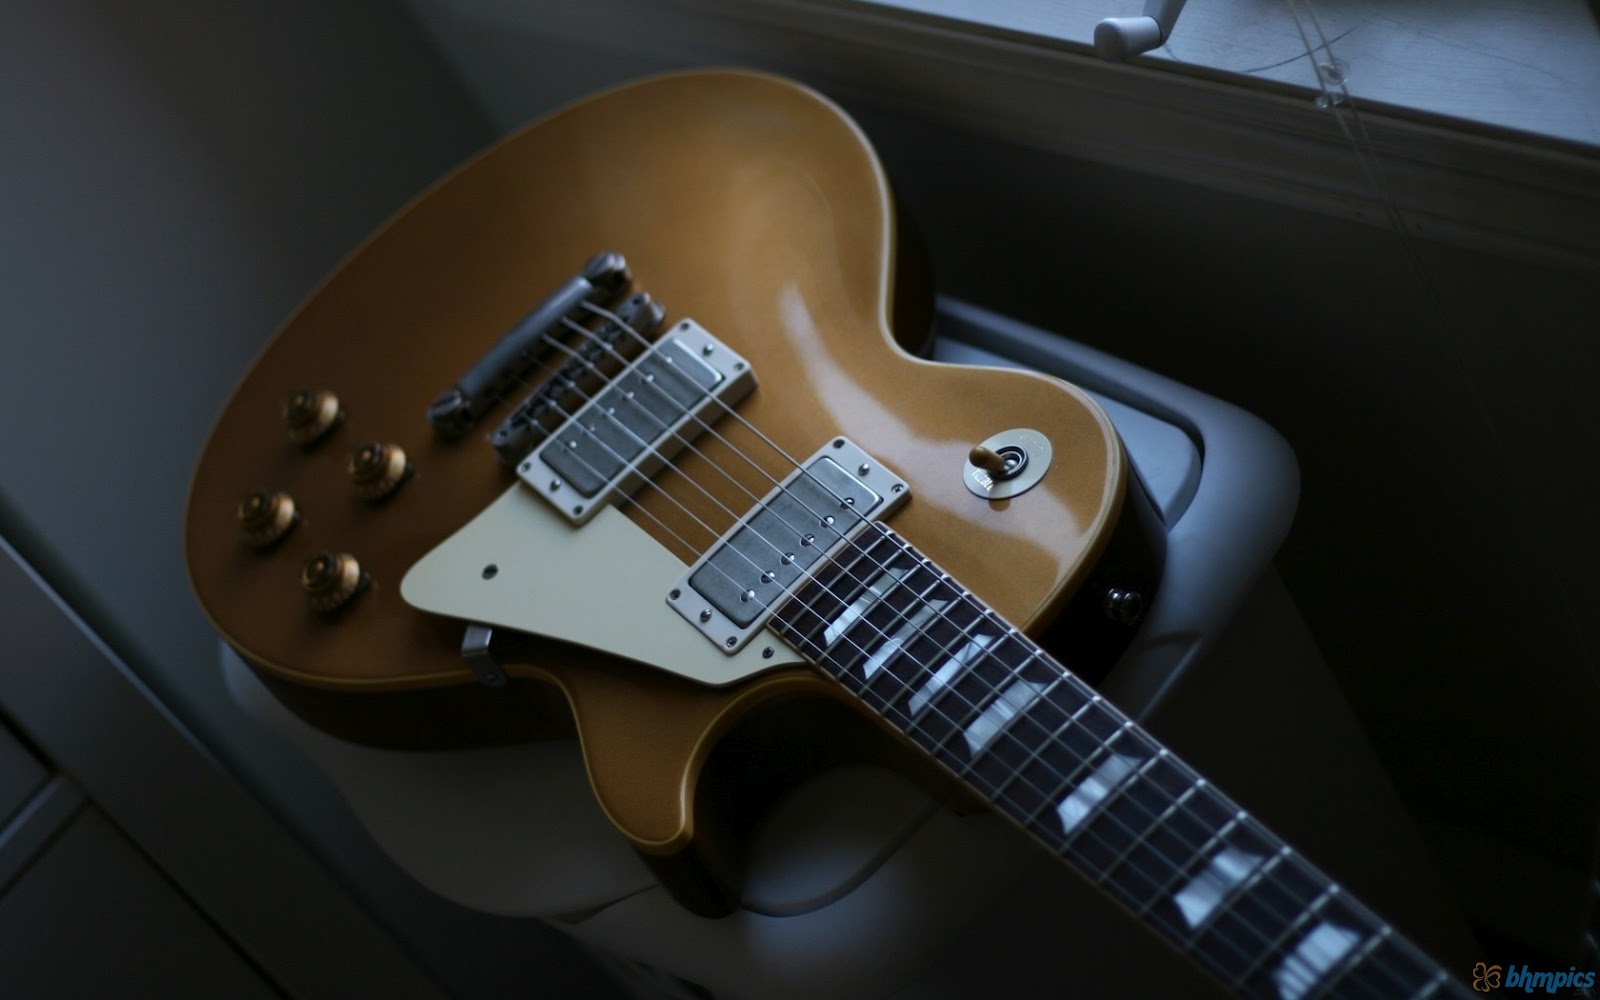 Gibson Guitar Wallpaper HD - WallpaperSafari